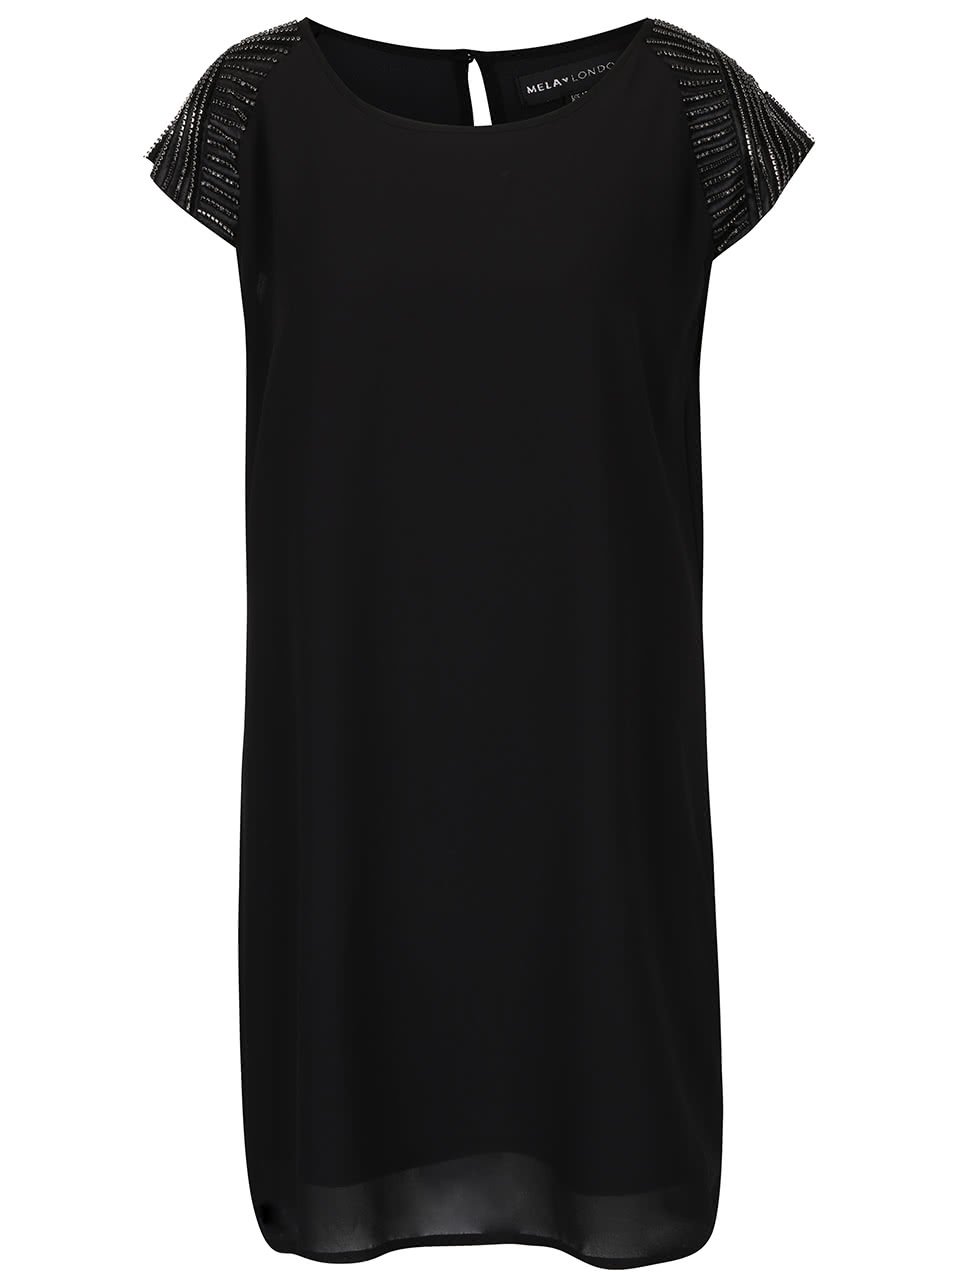 Černé šaty s aplikací na ramenou Mela London